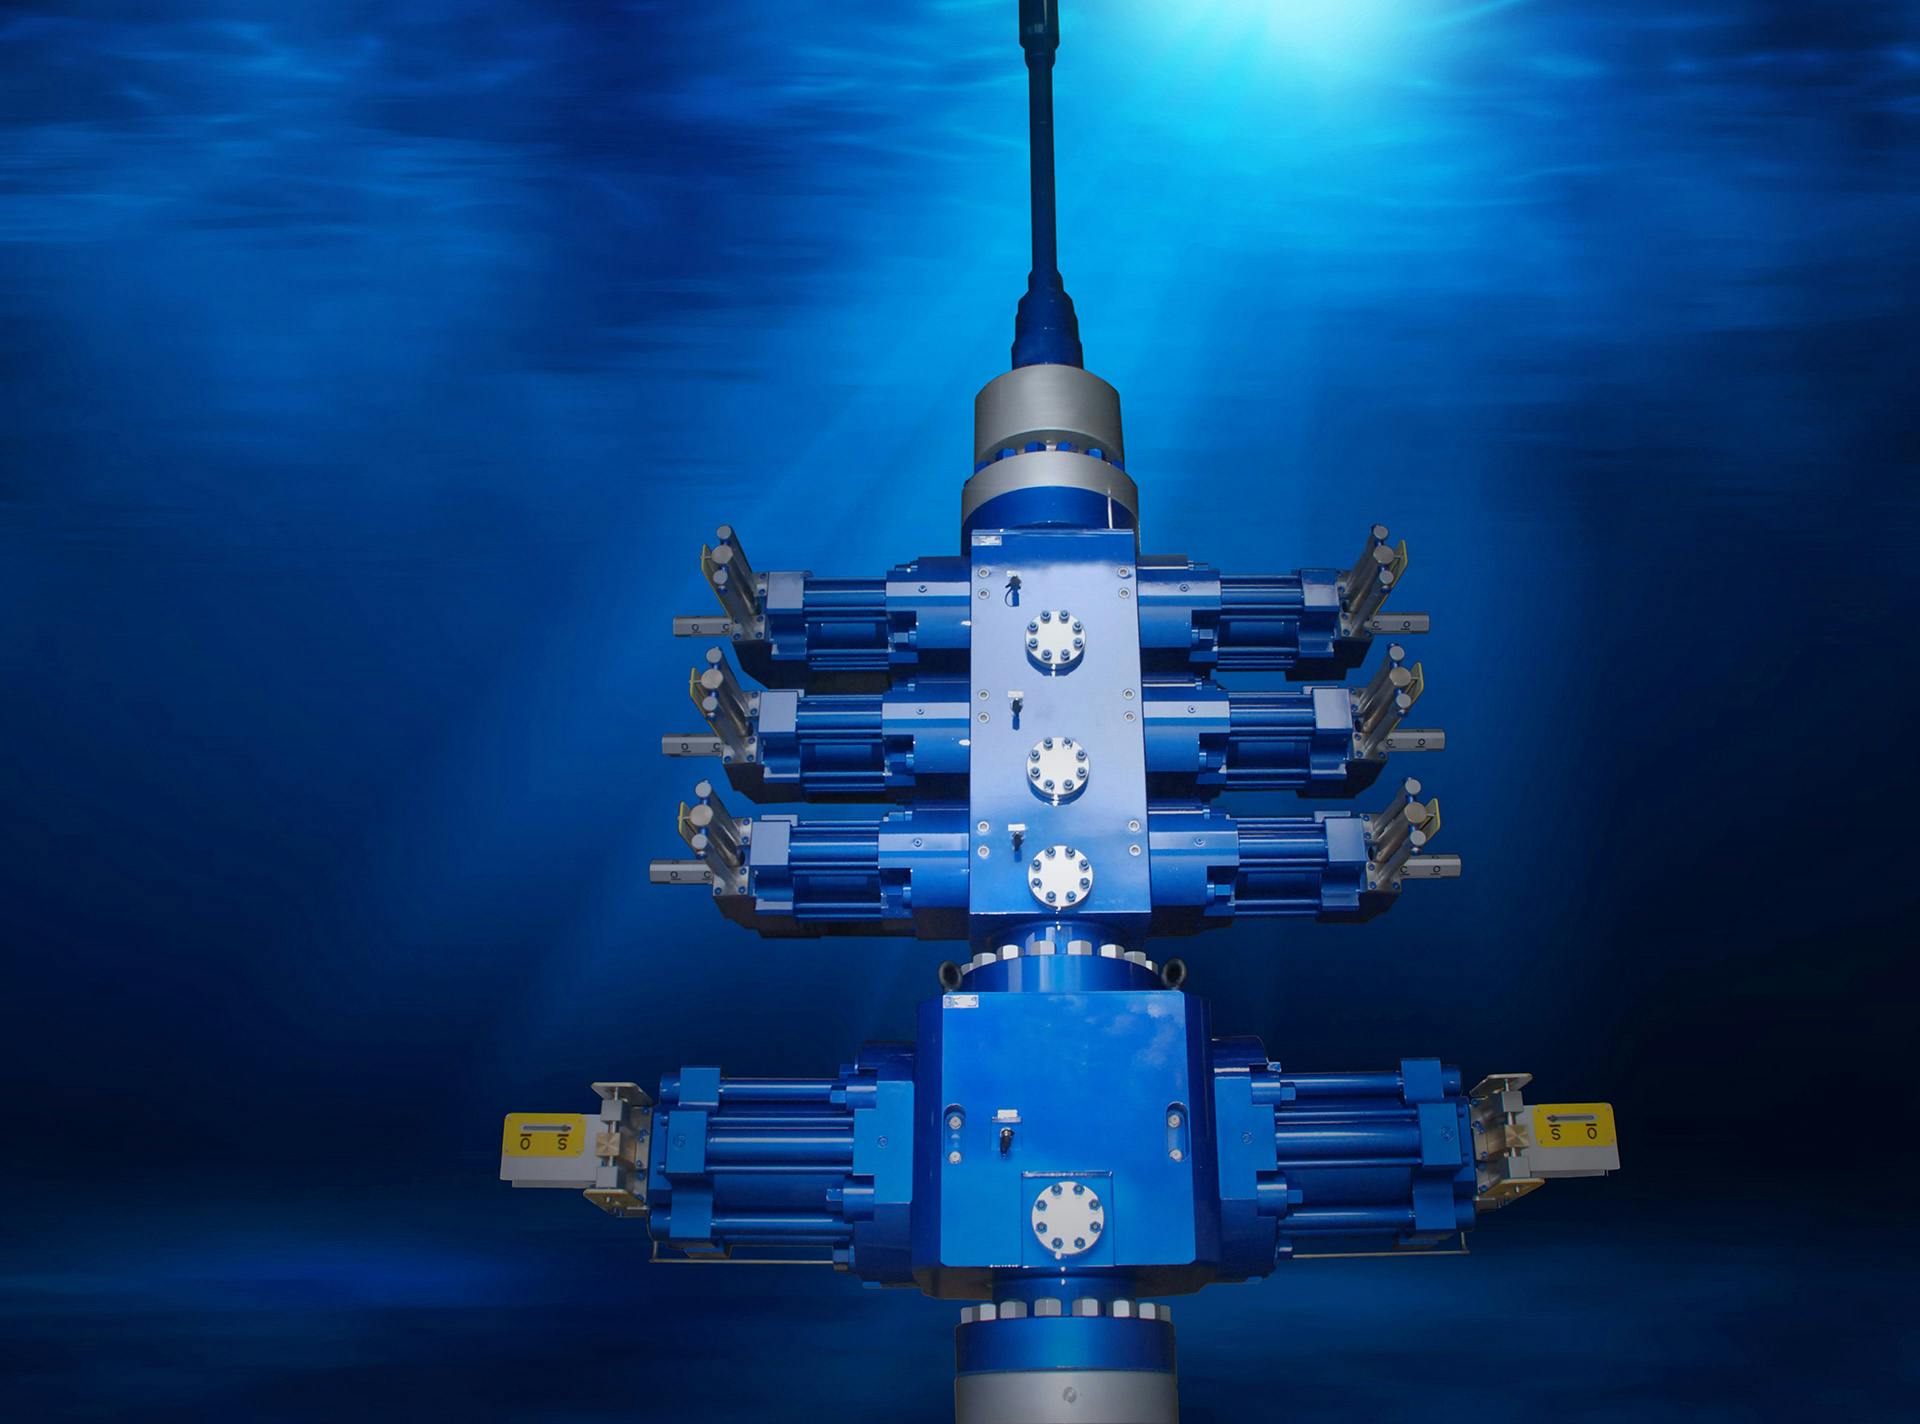 Subsea stack on ocean floor